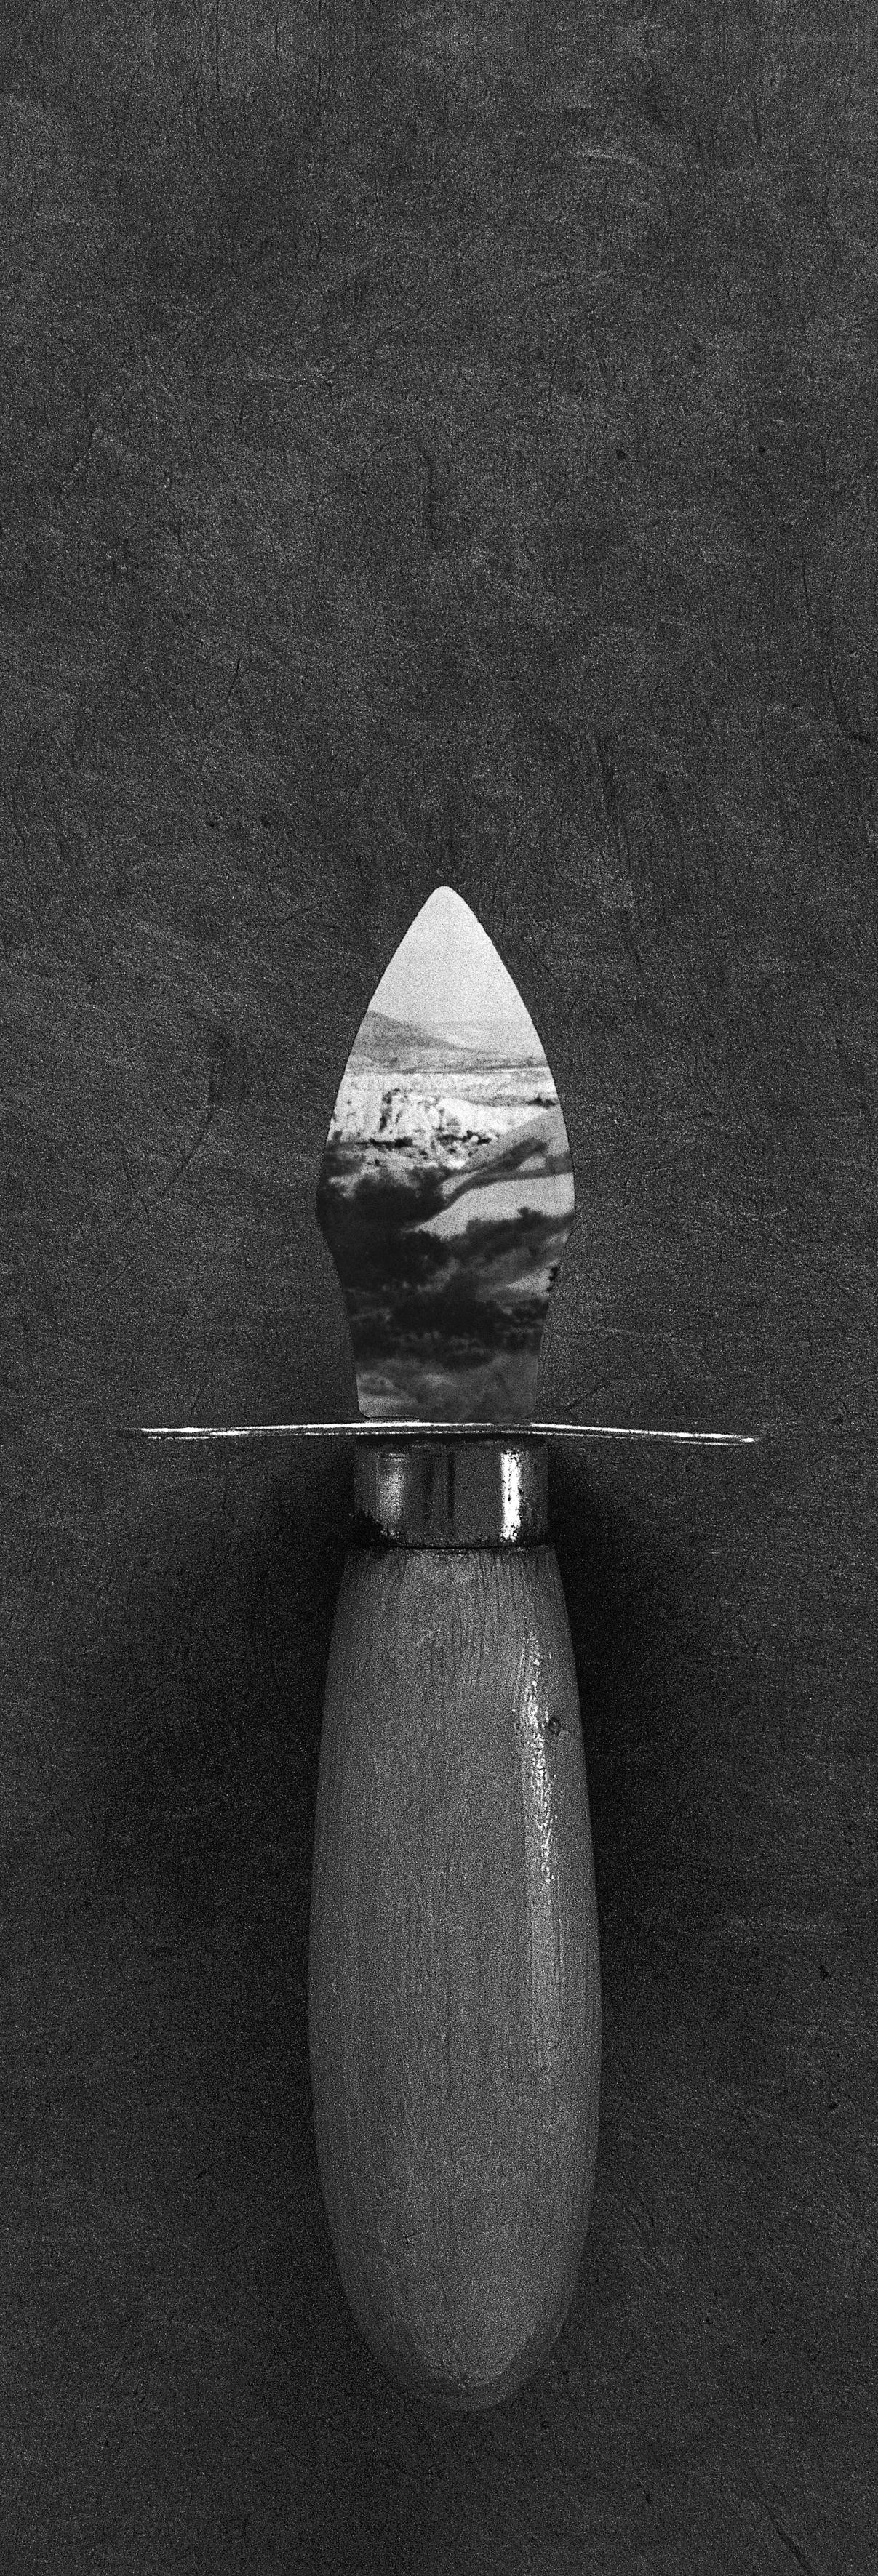 Couteau à huîtres - Photograph by Valérie Graftieaux